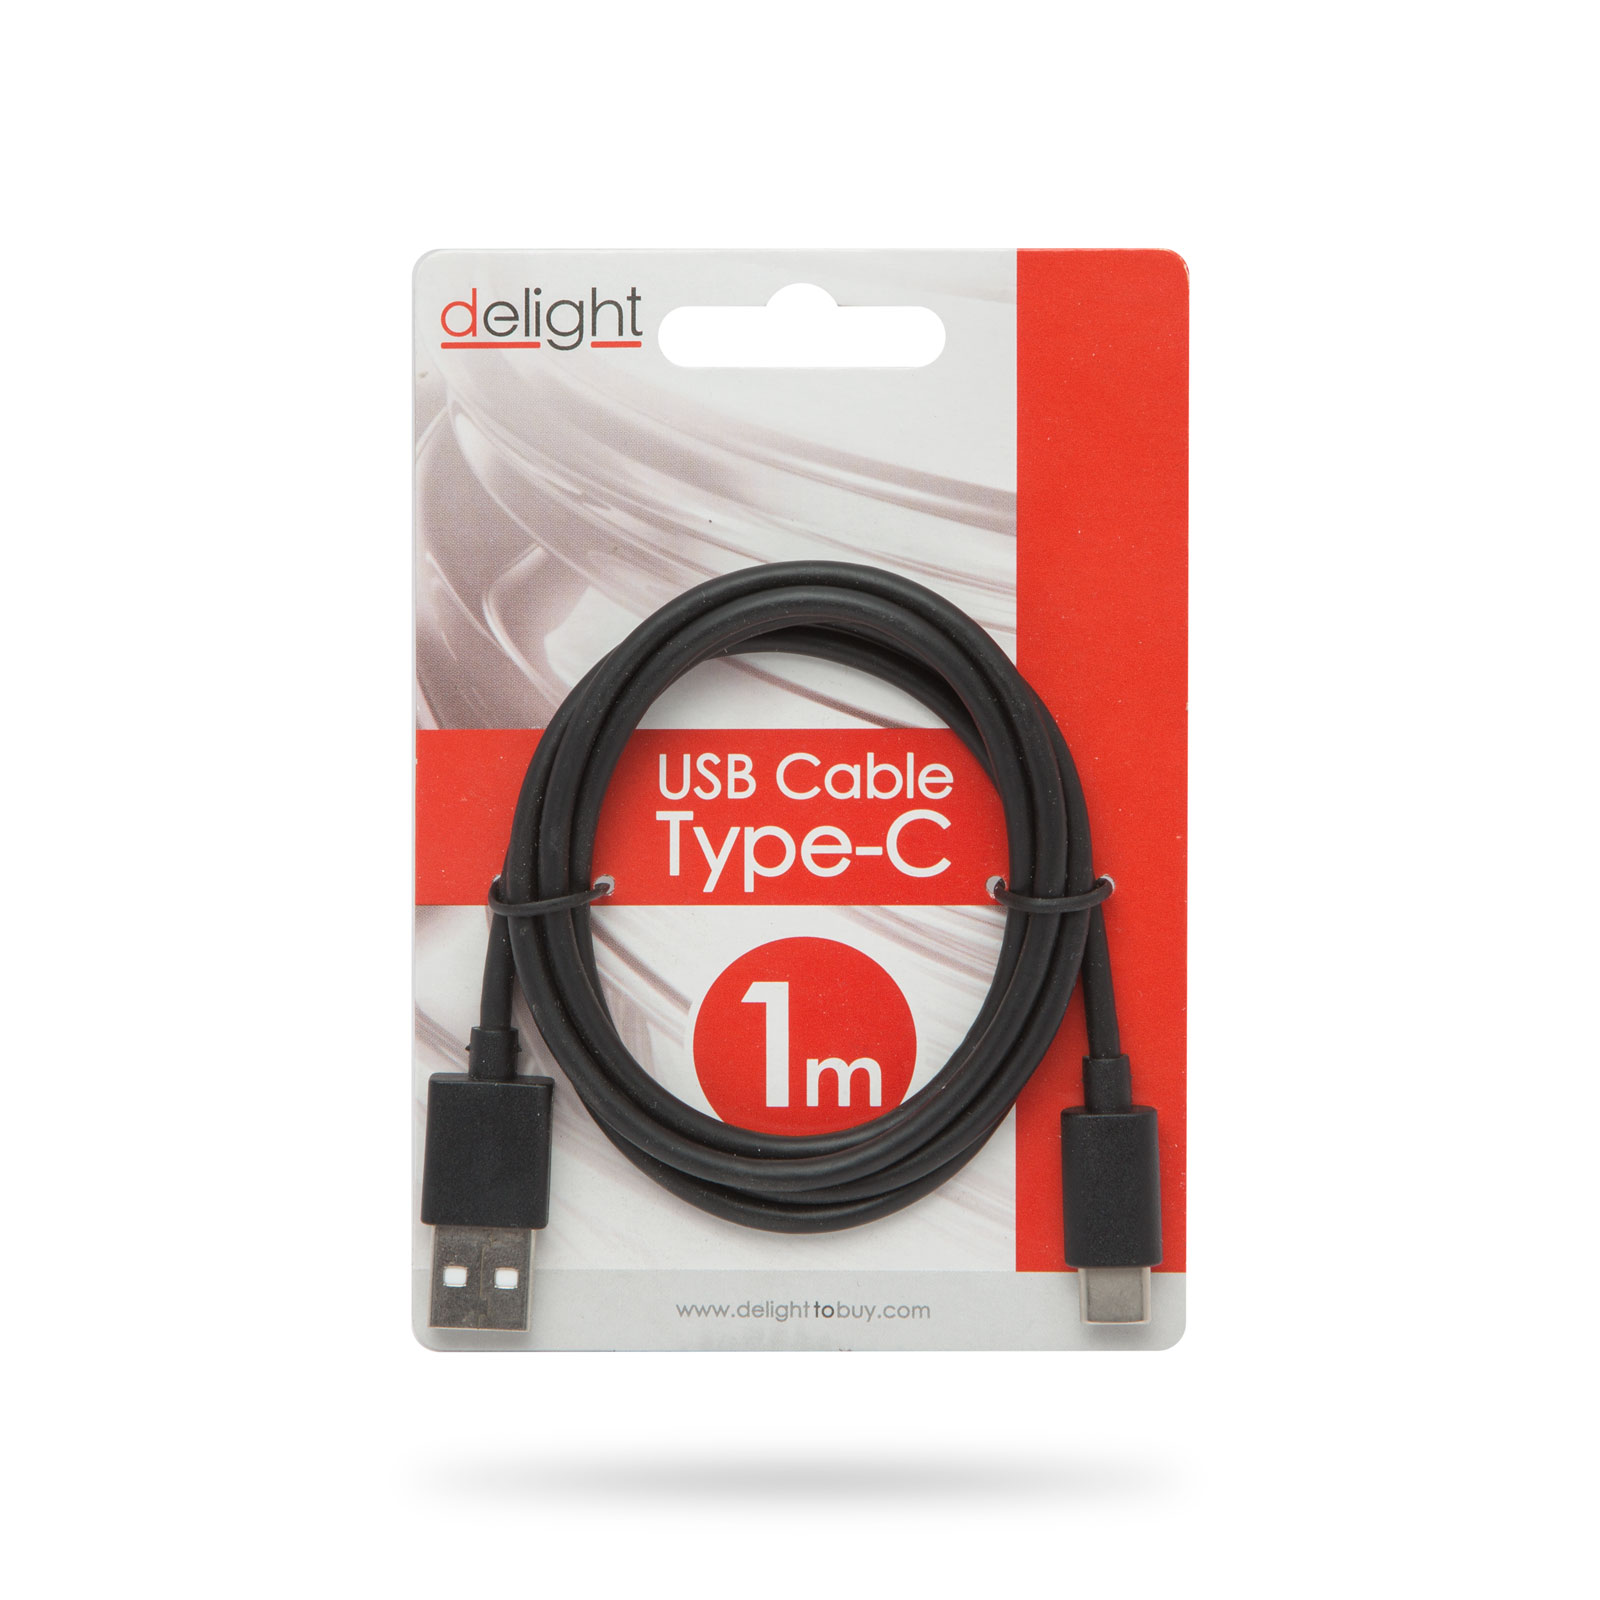 USB Cable Type-C - black - 1m thumb